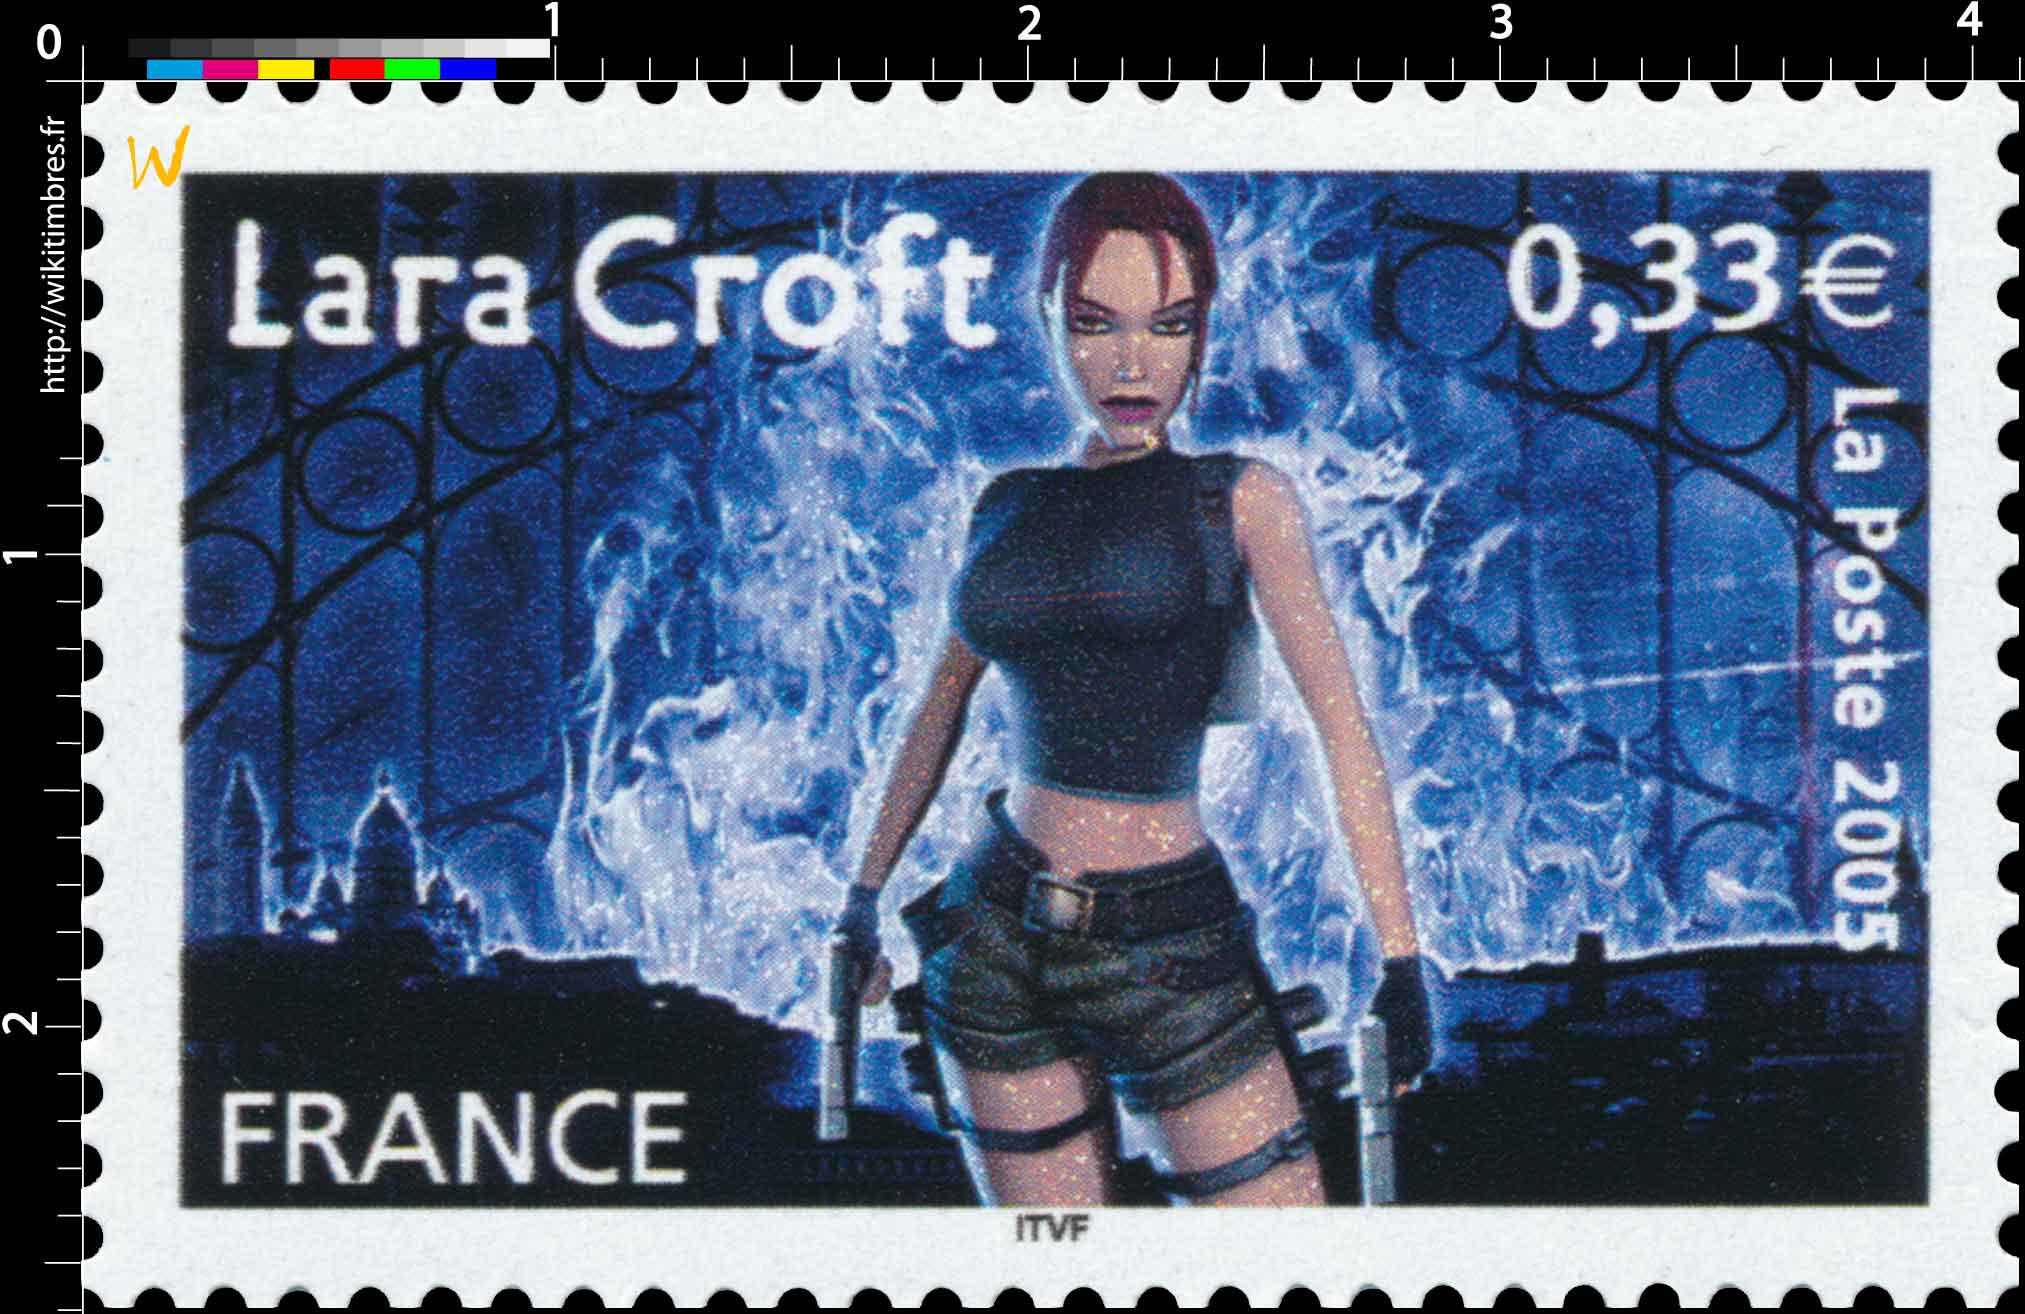 2005 Lara Croft